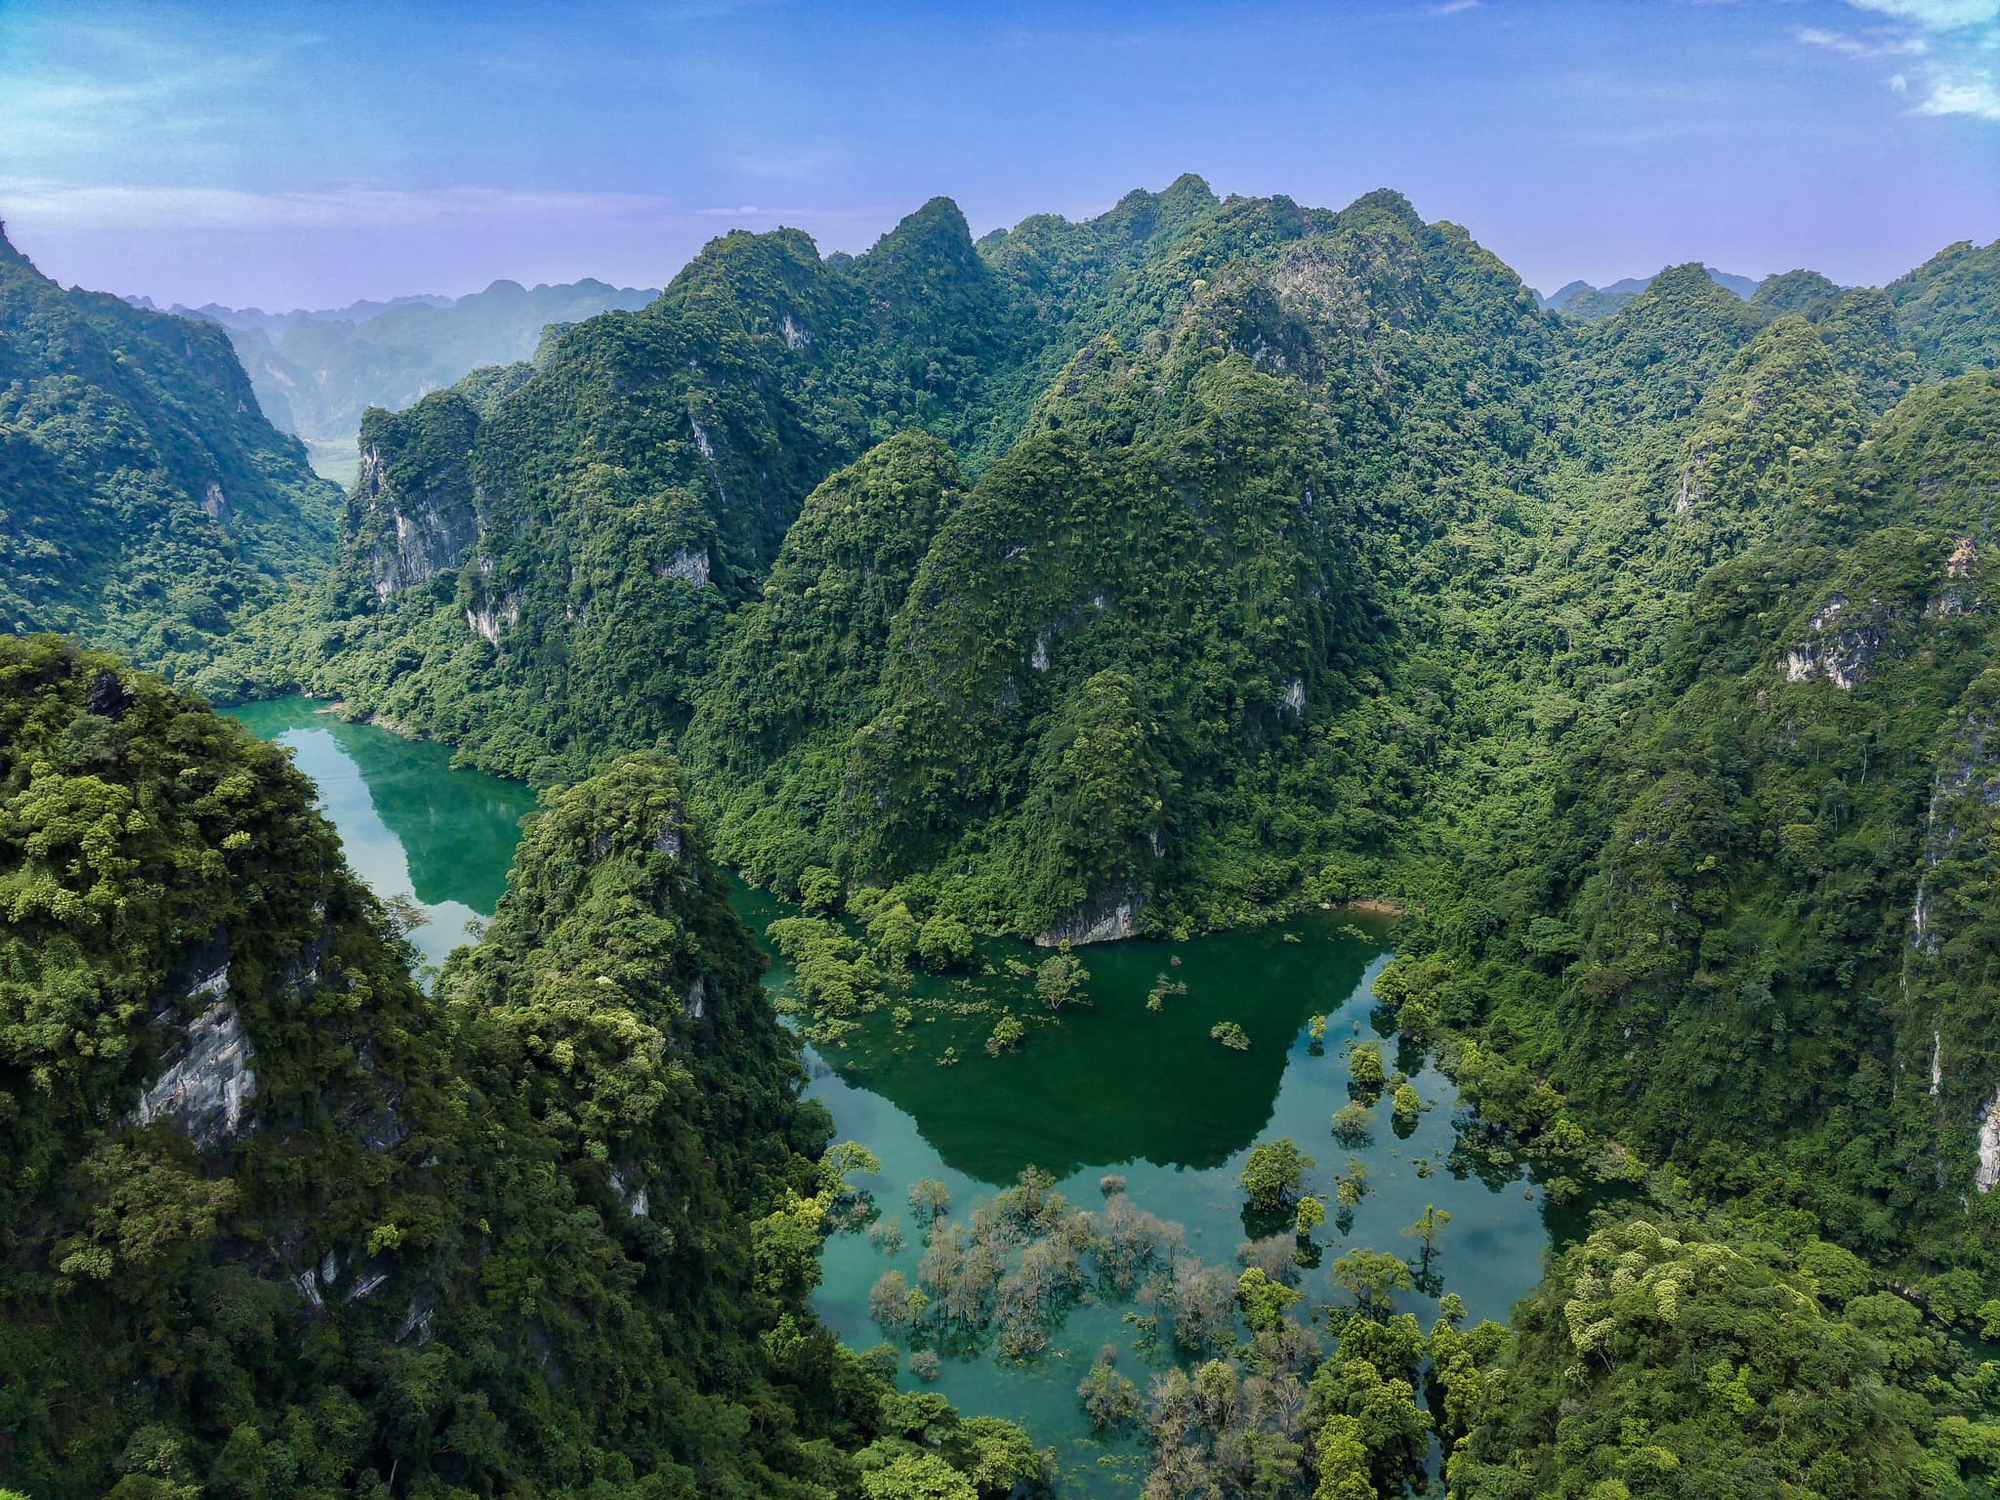 Phát hiện thung lũng hoang sơ cách Hà Nội hơn 100km, du khách ví như "kỳ quan thiên nhiên ẩn trong rừng"- Ảnh 1.